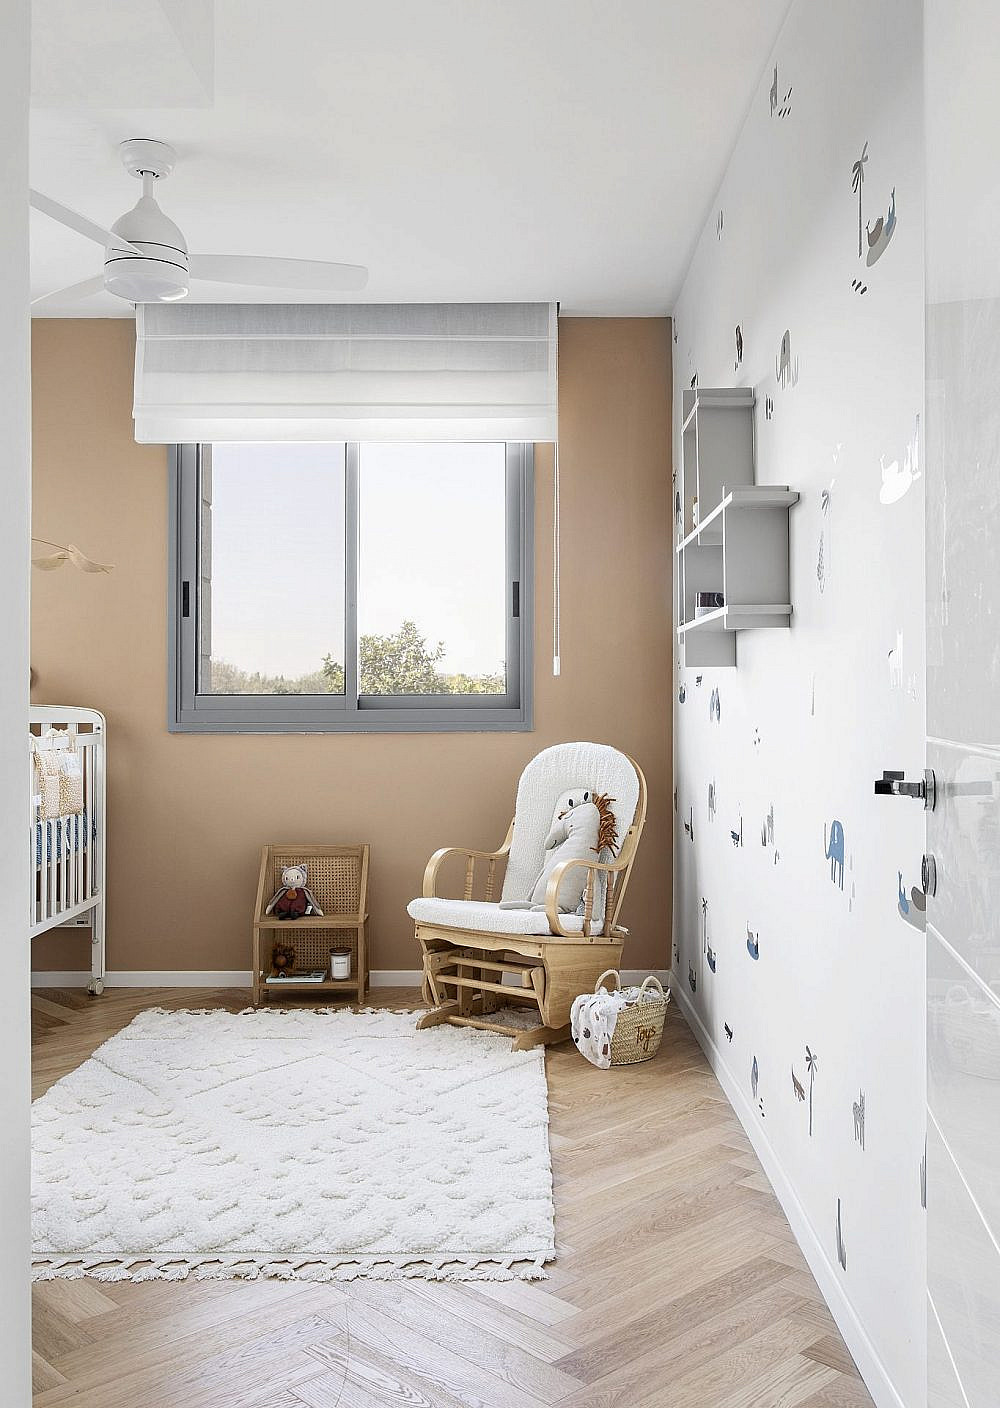 חדר התינוק בצמוד לחדר ההורים | עיצוב פנים: מיכל וולפסון, צילום: איתי בנית